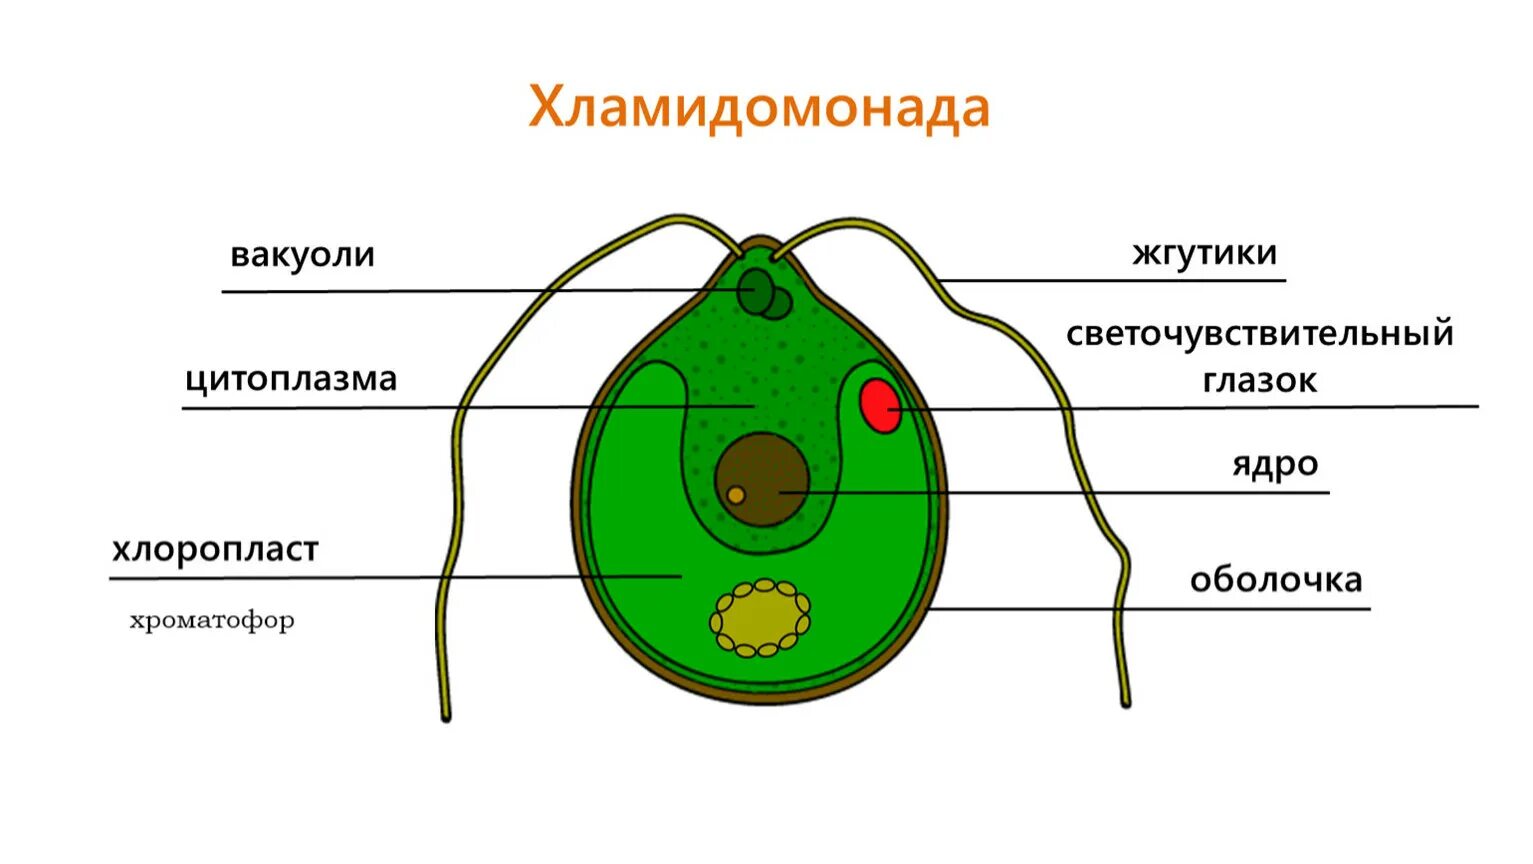 Строение одноклеточных зелёных возрослей. Строение клетки вордорослоя. Строение клетки Chlamydomonas. Схема строения клетки хламидомонады.